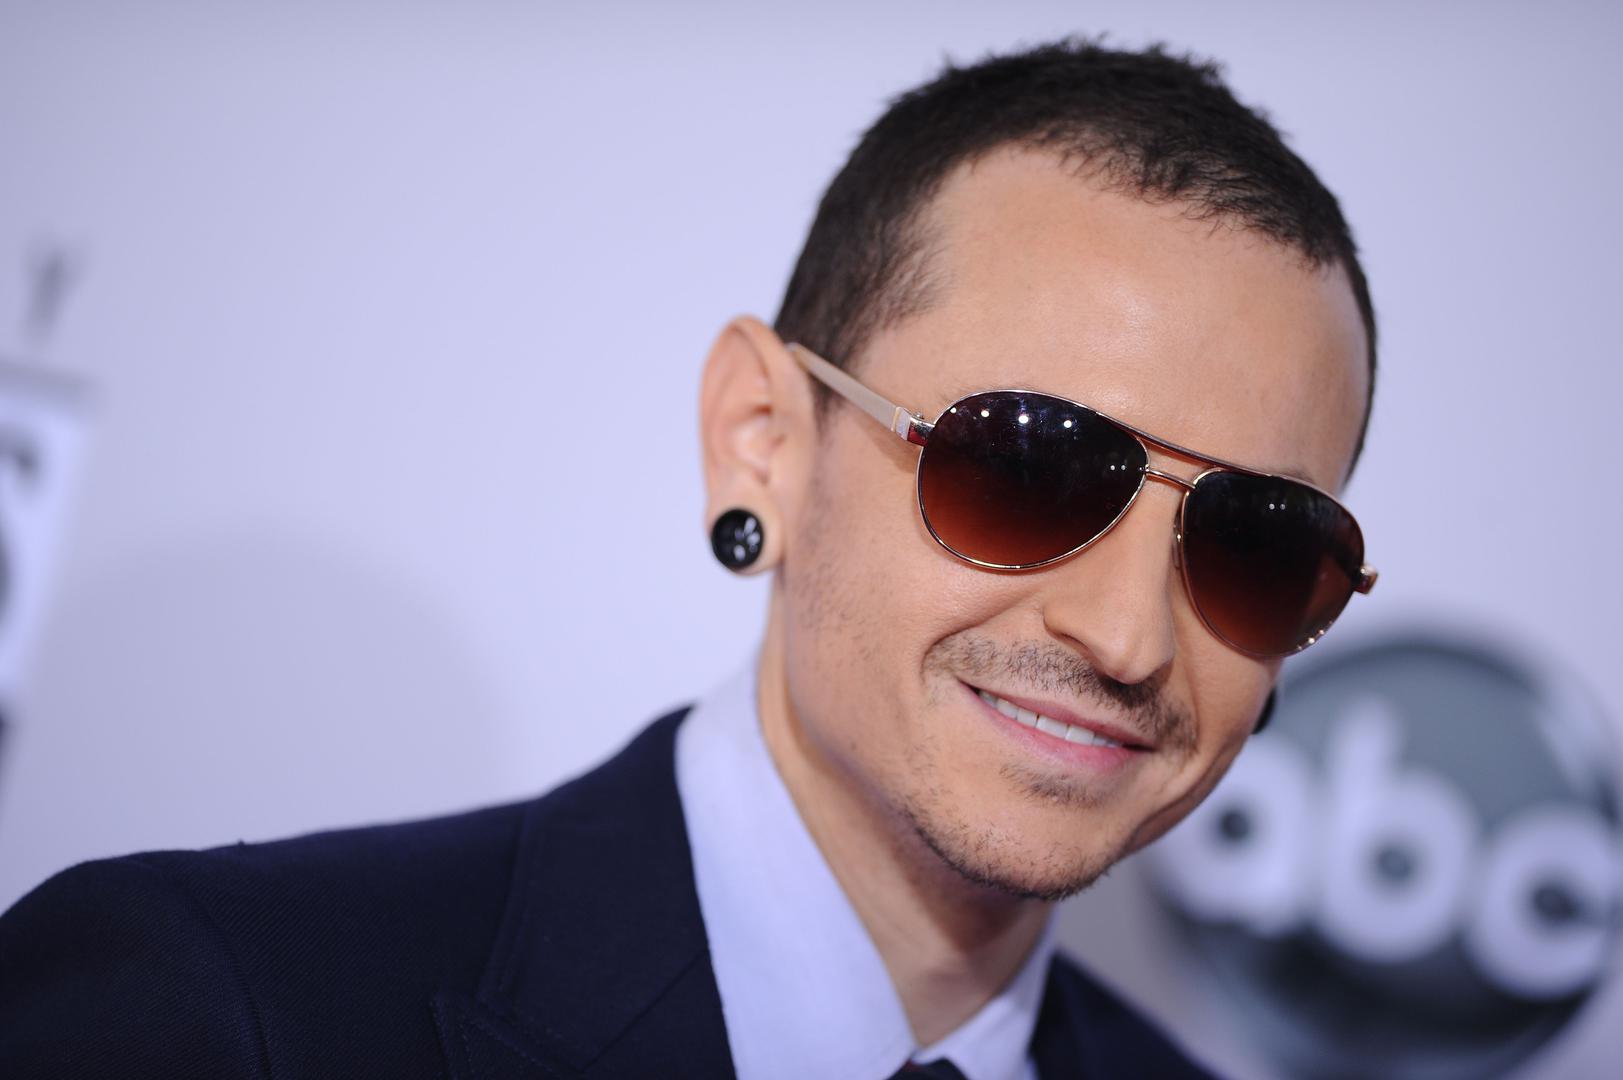 Fanove grupe Linkin Park u srpnju šokirala je vijest o samoubojstvu frontmena grupe Chestera Benningtona, koji je pronađen mrtav u svom domu u Los Angelesu